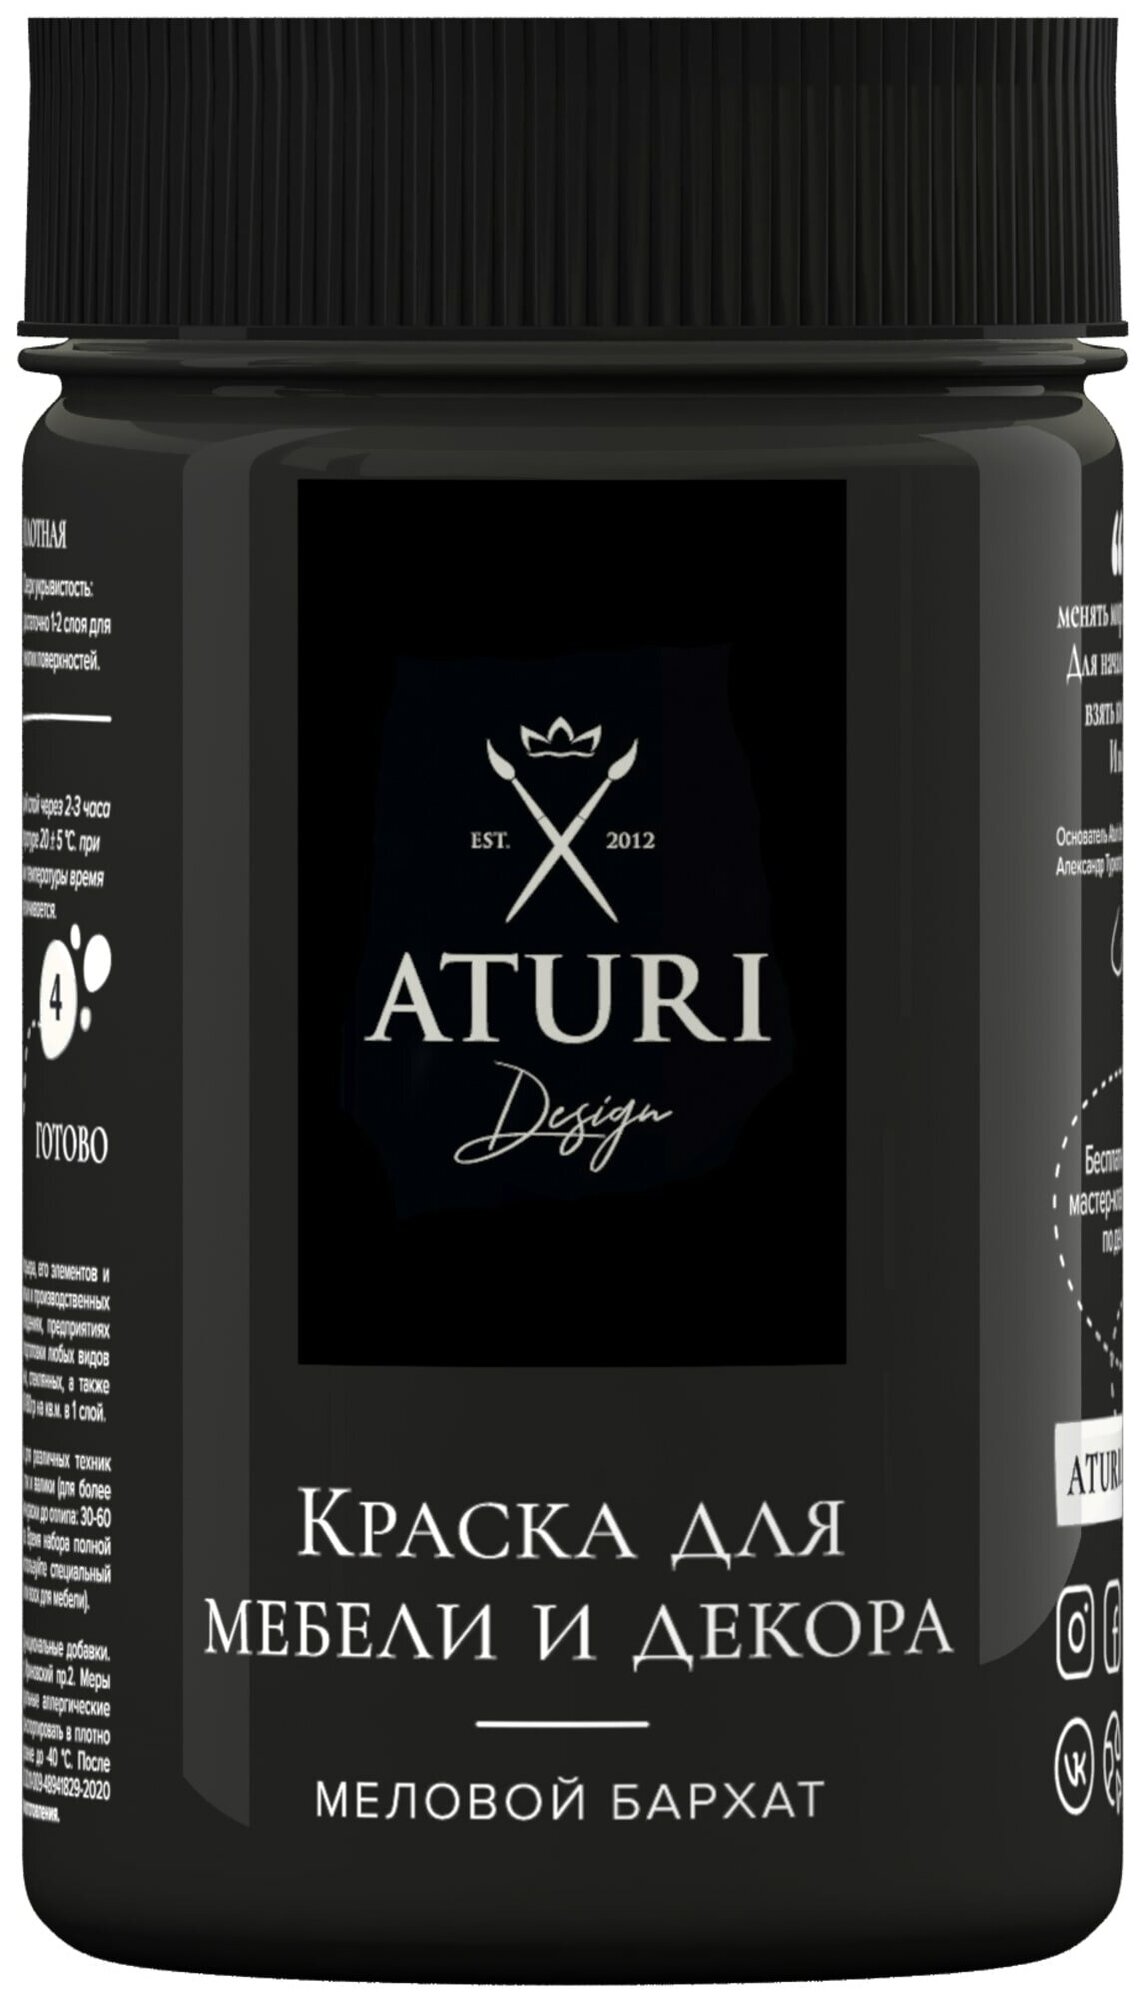 Краска меловая Aturi Design для мебели и декора "Меловой Бархат" влагостойкая матовая черный бархат 0.4 кг